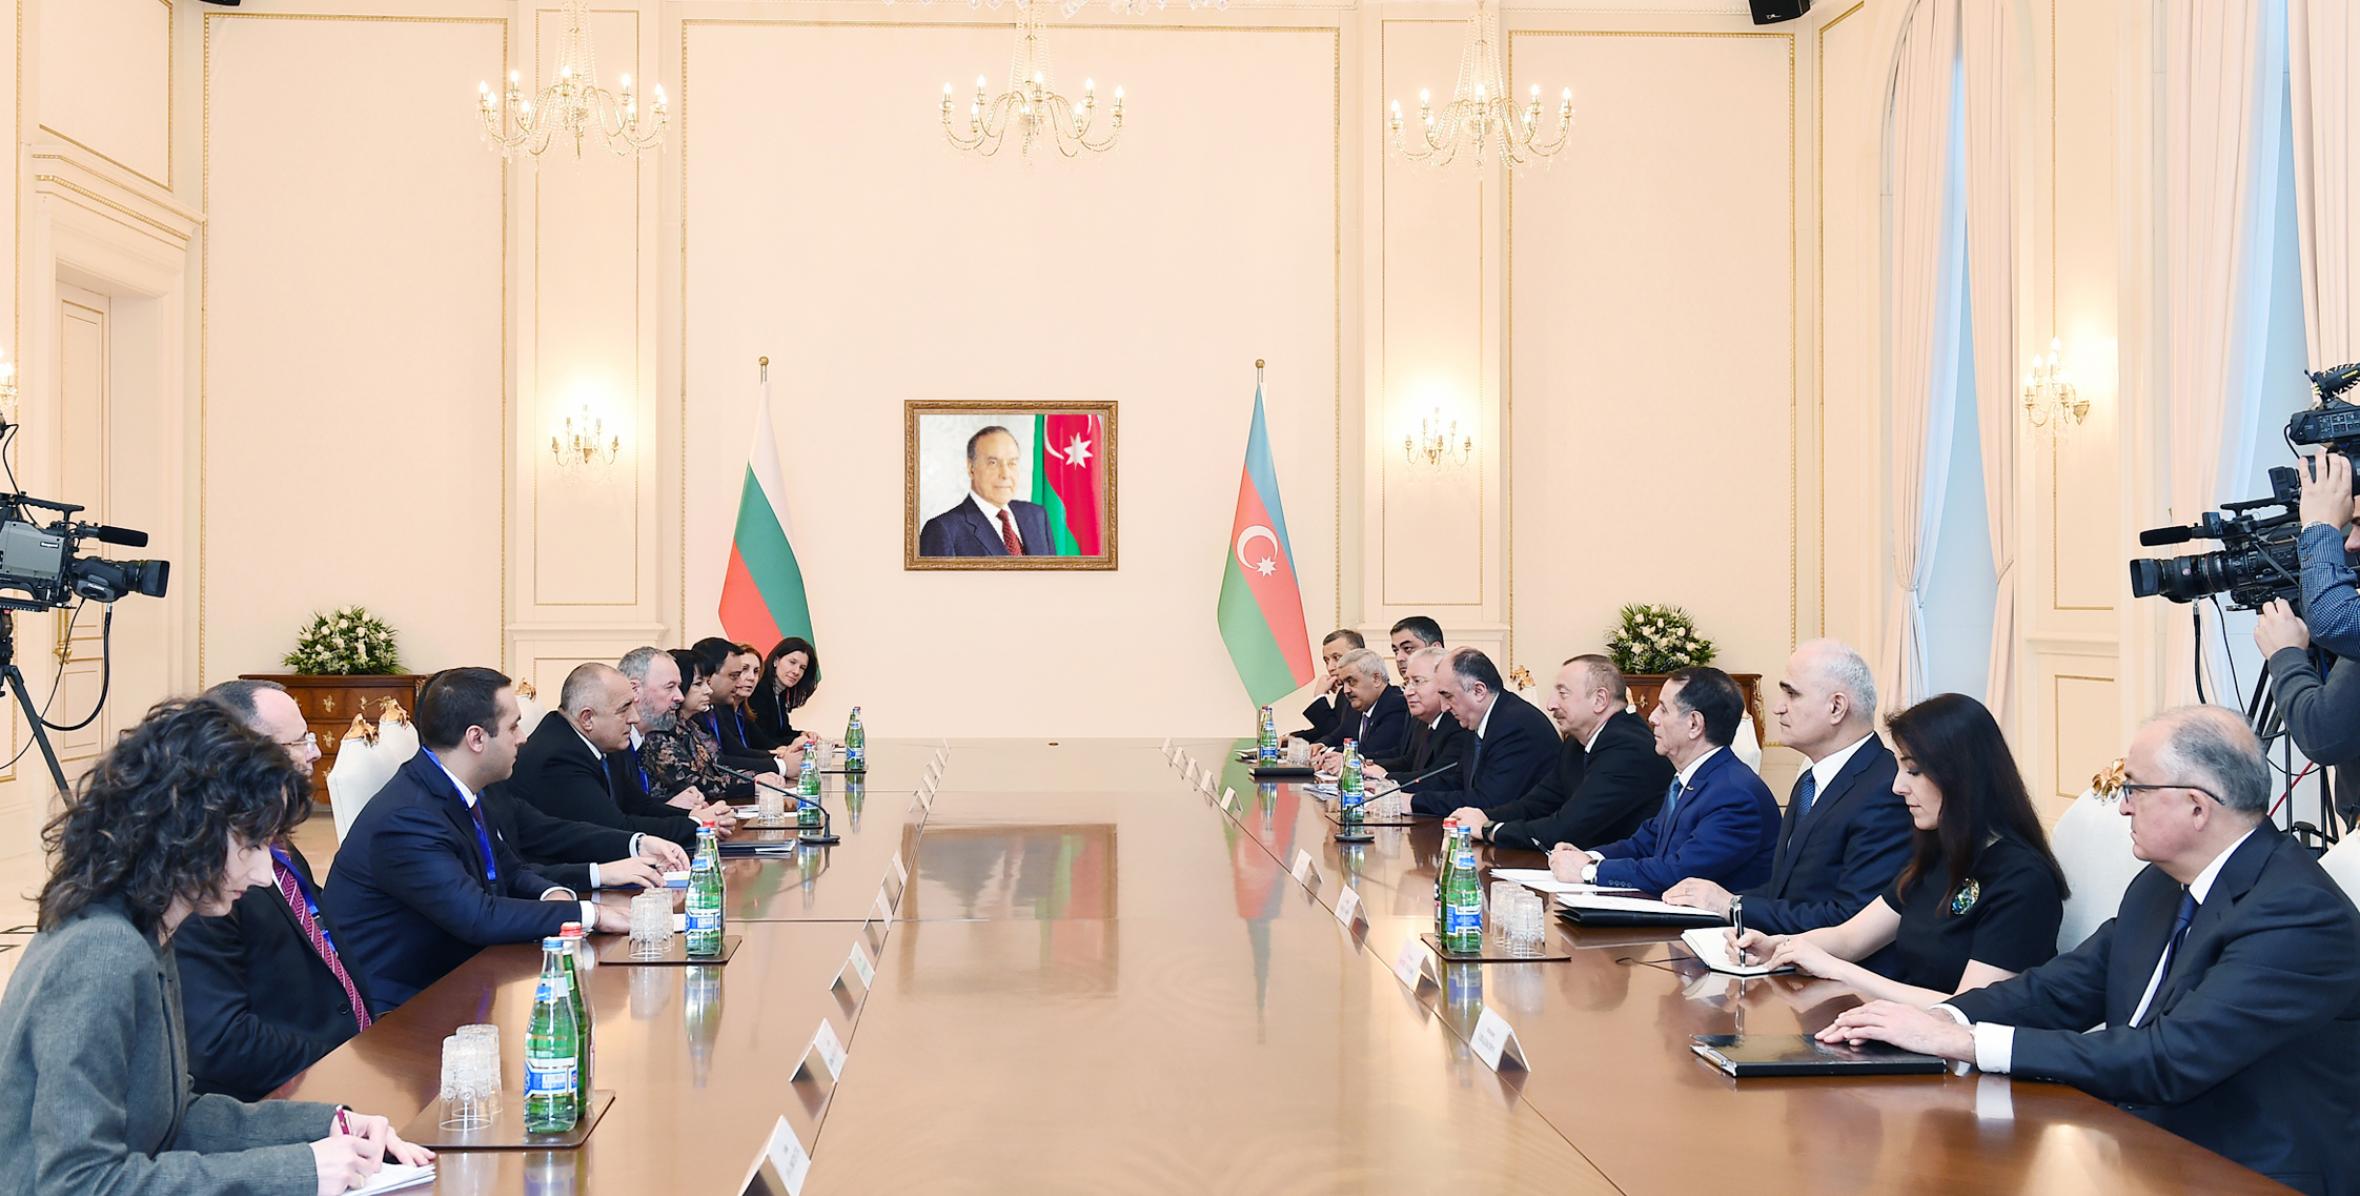 Состоялась встреча Ильхама Алиева и премьер-министра Республики Болгария Бойко Борисова в расширенном составе с участием делегаций.